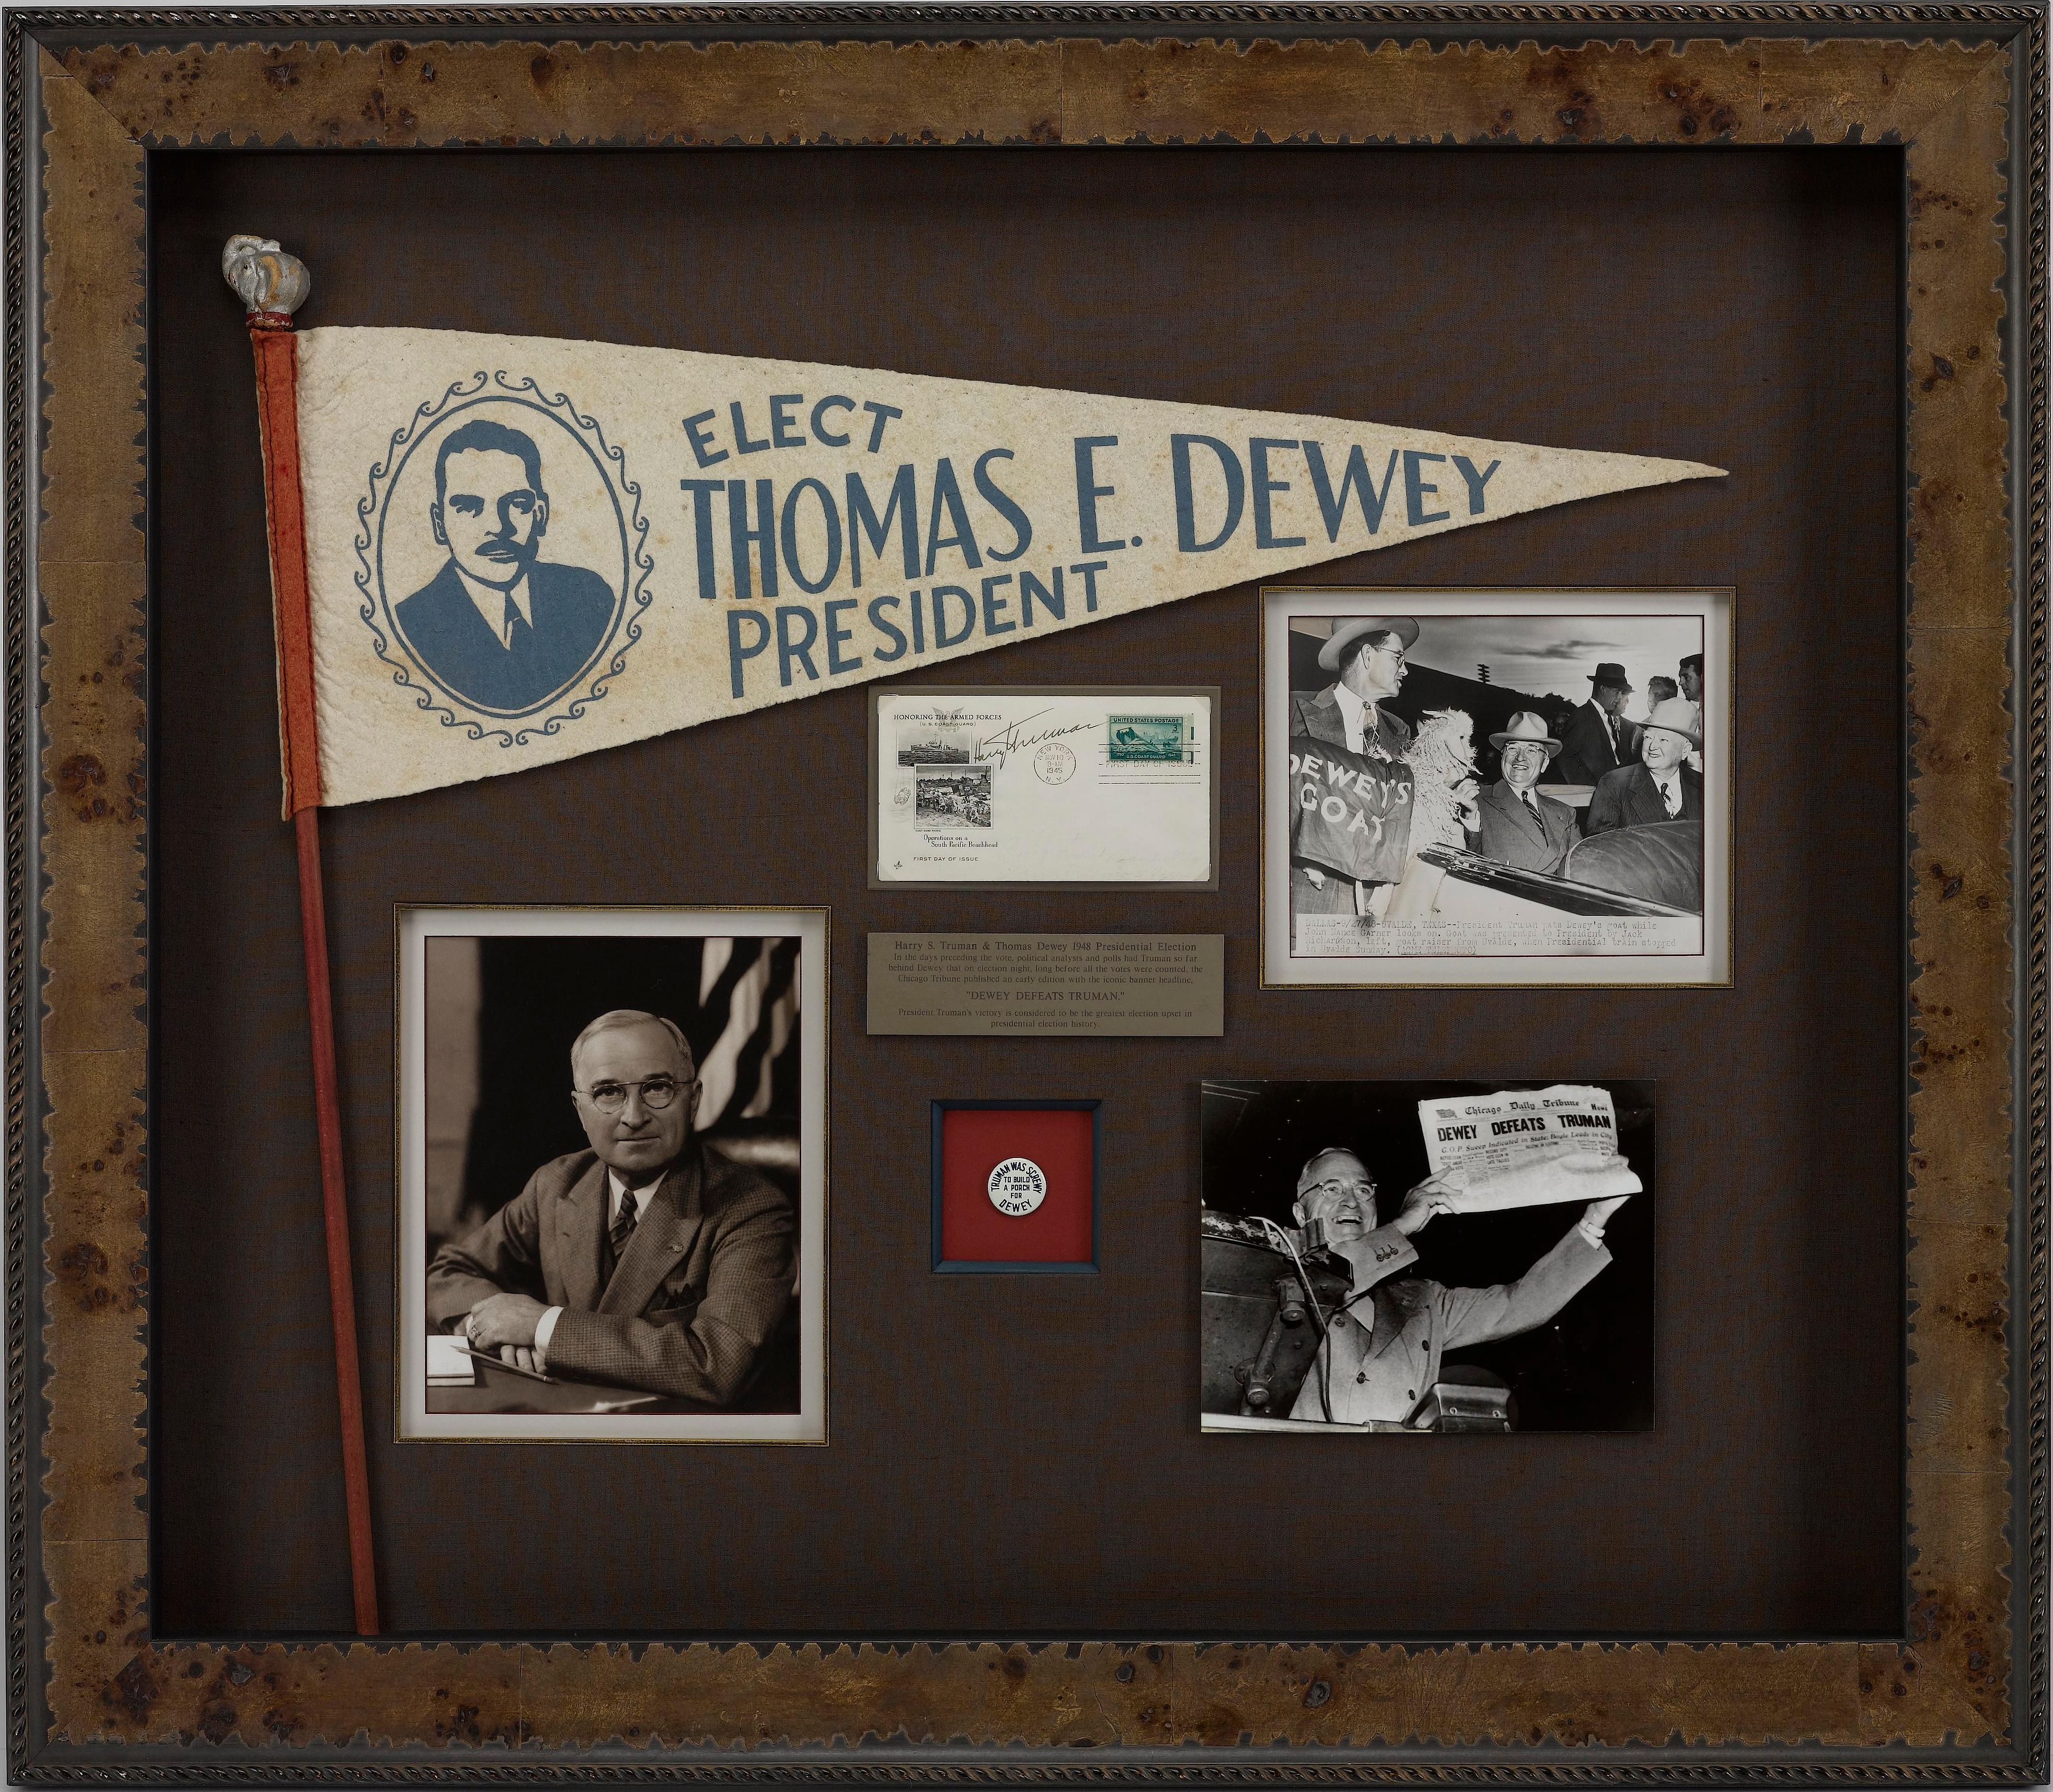 Voici un collage commémoratif unique, célébrant l'élection présidentielle américaine de 1948 entre Harry Truman et Thomas Dewey. Ce collage unique en son genre comprend une enveloppe postale commémorative signée par Harry Truman, un fanion de